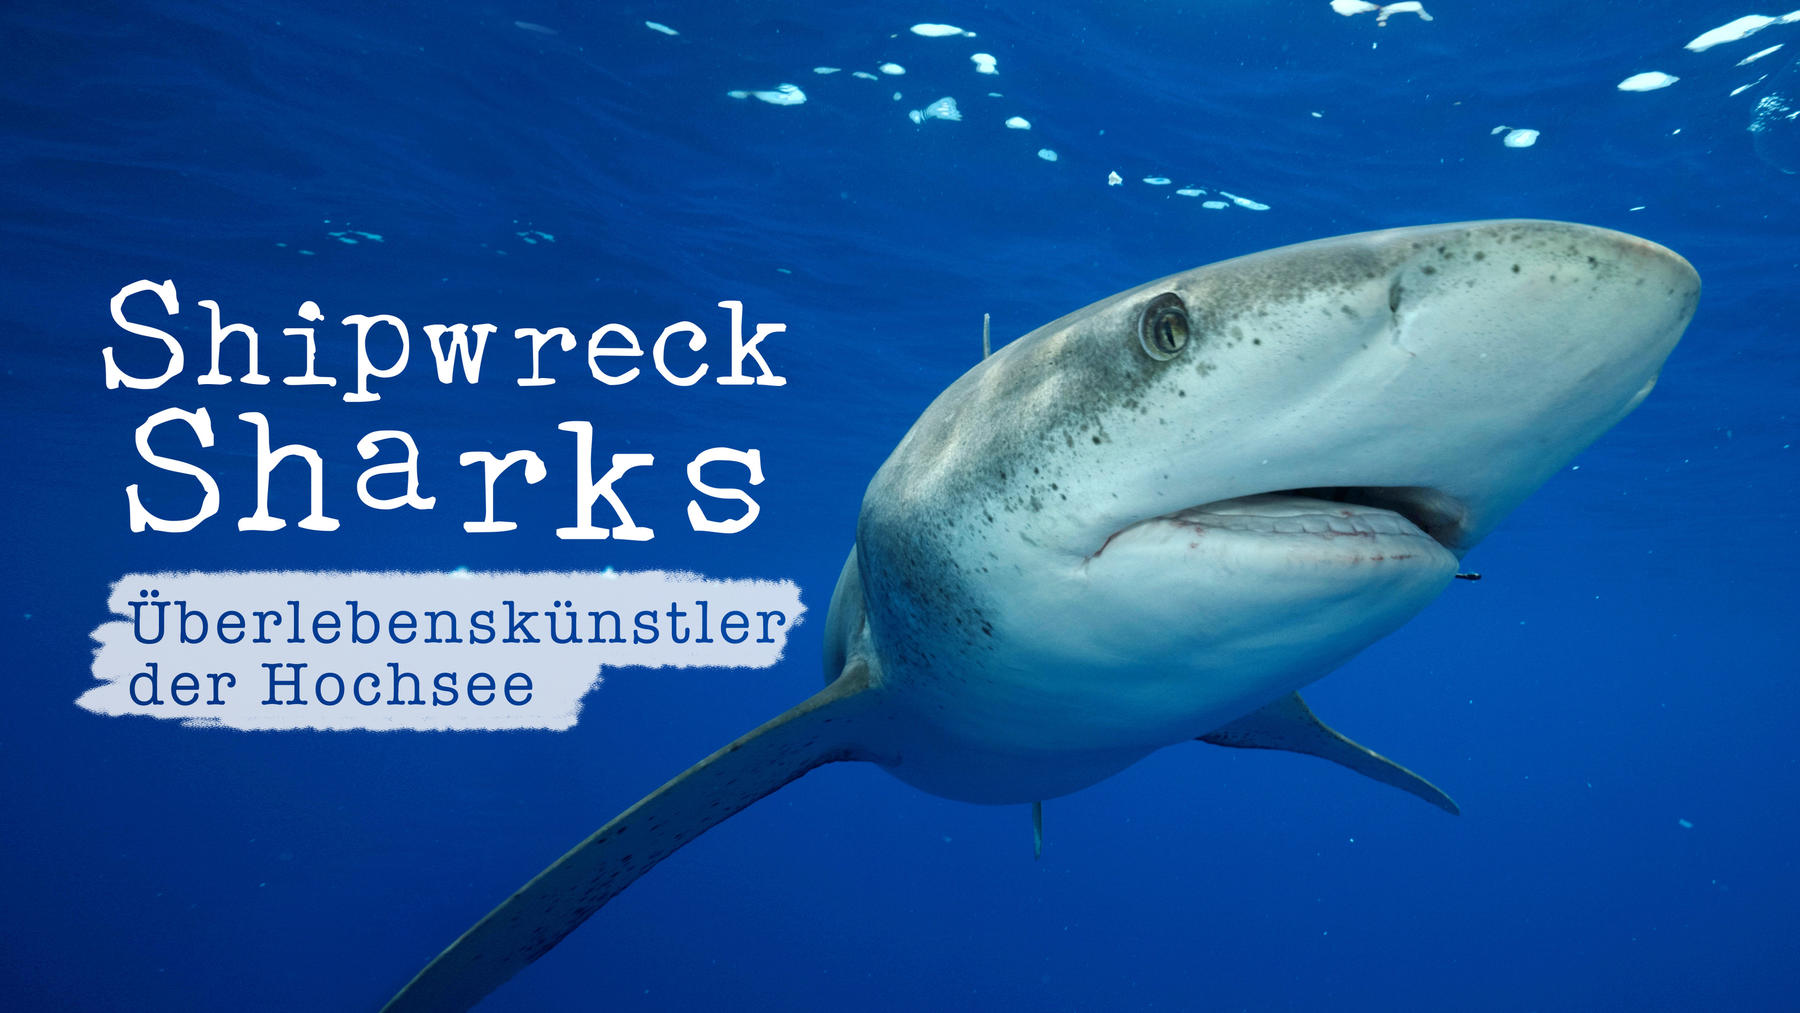 Shipwreck Sharks - Überlebenskünstler der Hochsee